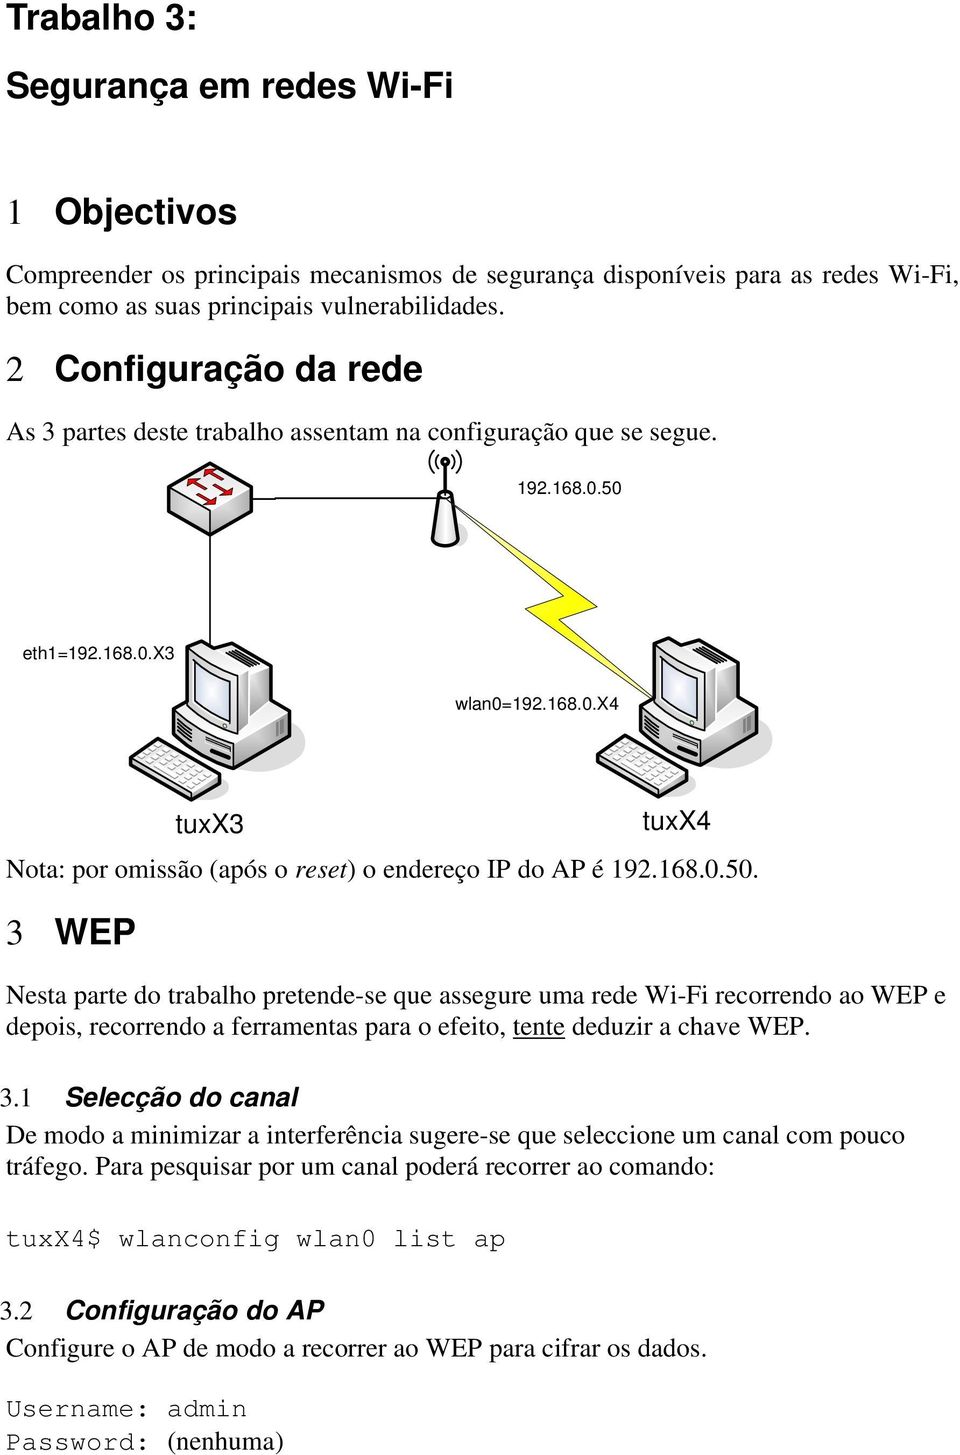 168.0.50. 3 WEP Nesta parte do trabalho pretende-se que assegure uma rede Wi-Fi recorrendo ao WEP e depois, recorrendo a ferramentas para o efeito, tente deduzir a chave WEP. 3.1 Selecção do canal De modo a minimizar a interferência sugere-se que seleccione um canal com pouco tráfego.